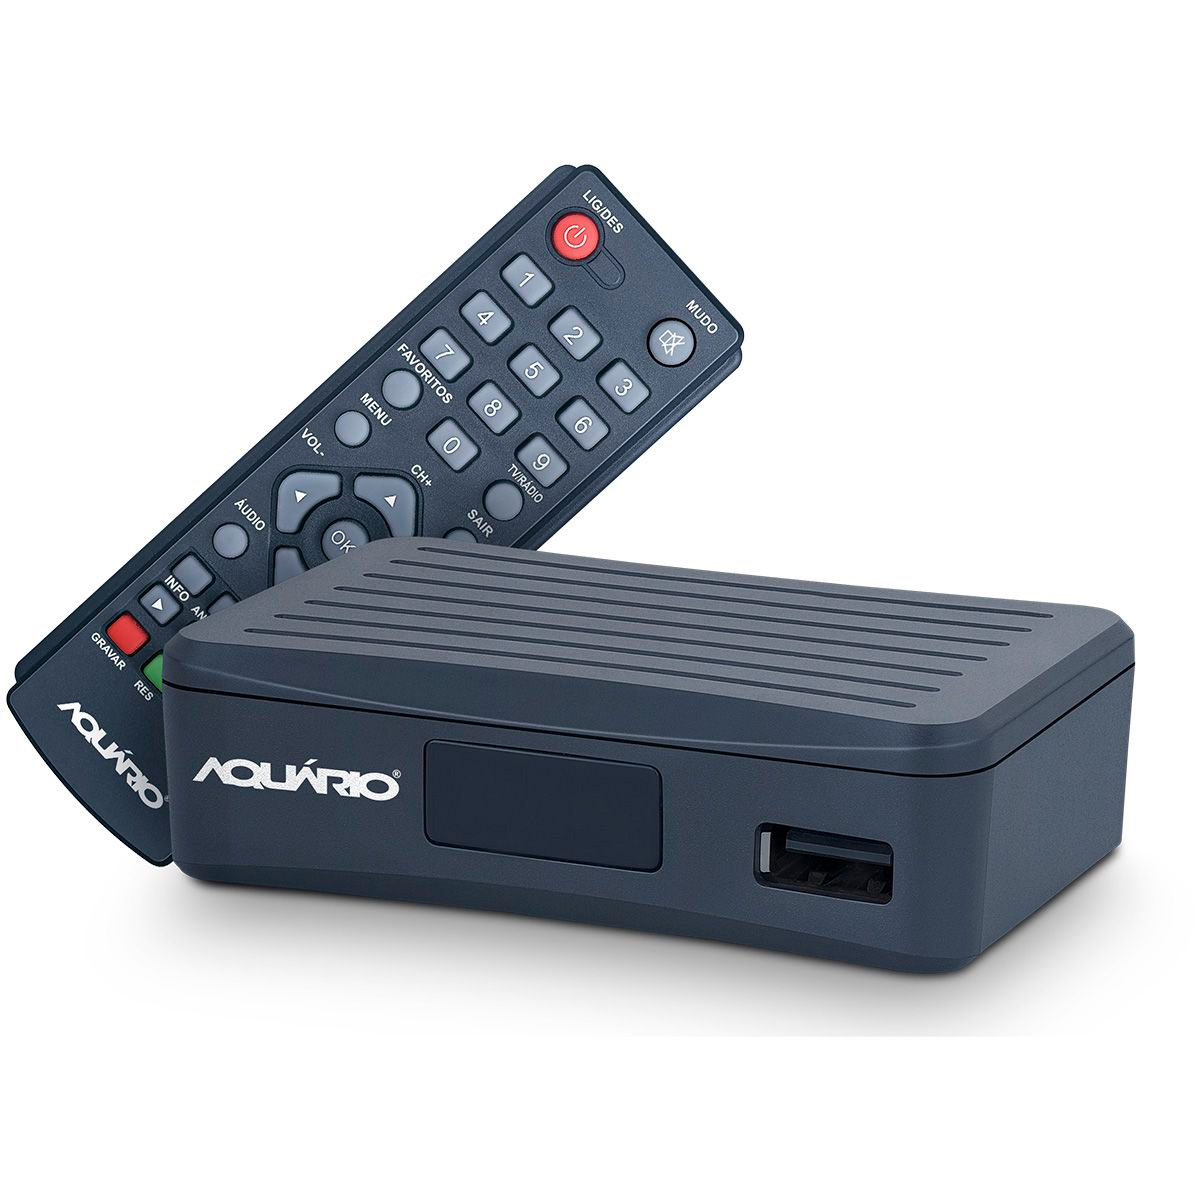 Conversor e Gravador Digital HDTV Aquário DTV-4000S - Full HD - com Controle Remoto - USB, HDMI, RCA